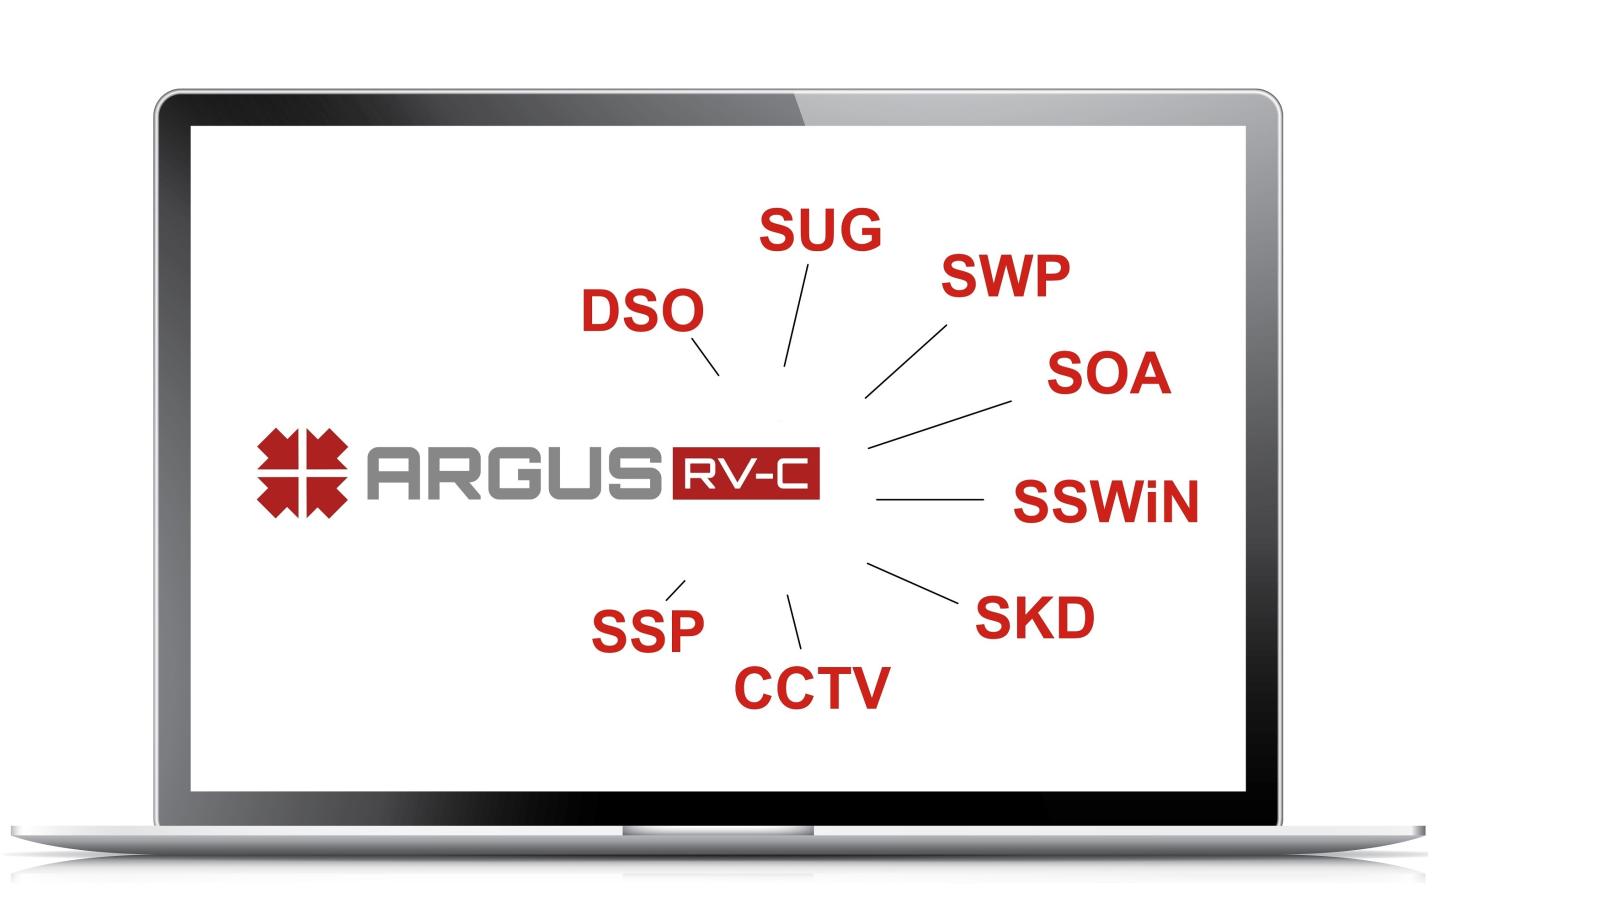 ARGUS RV-C integra2